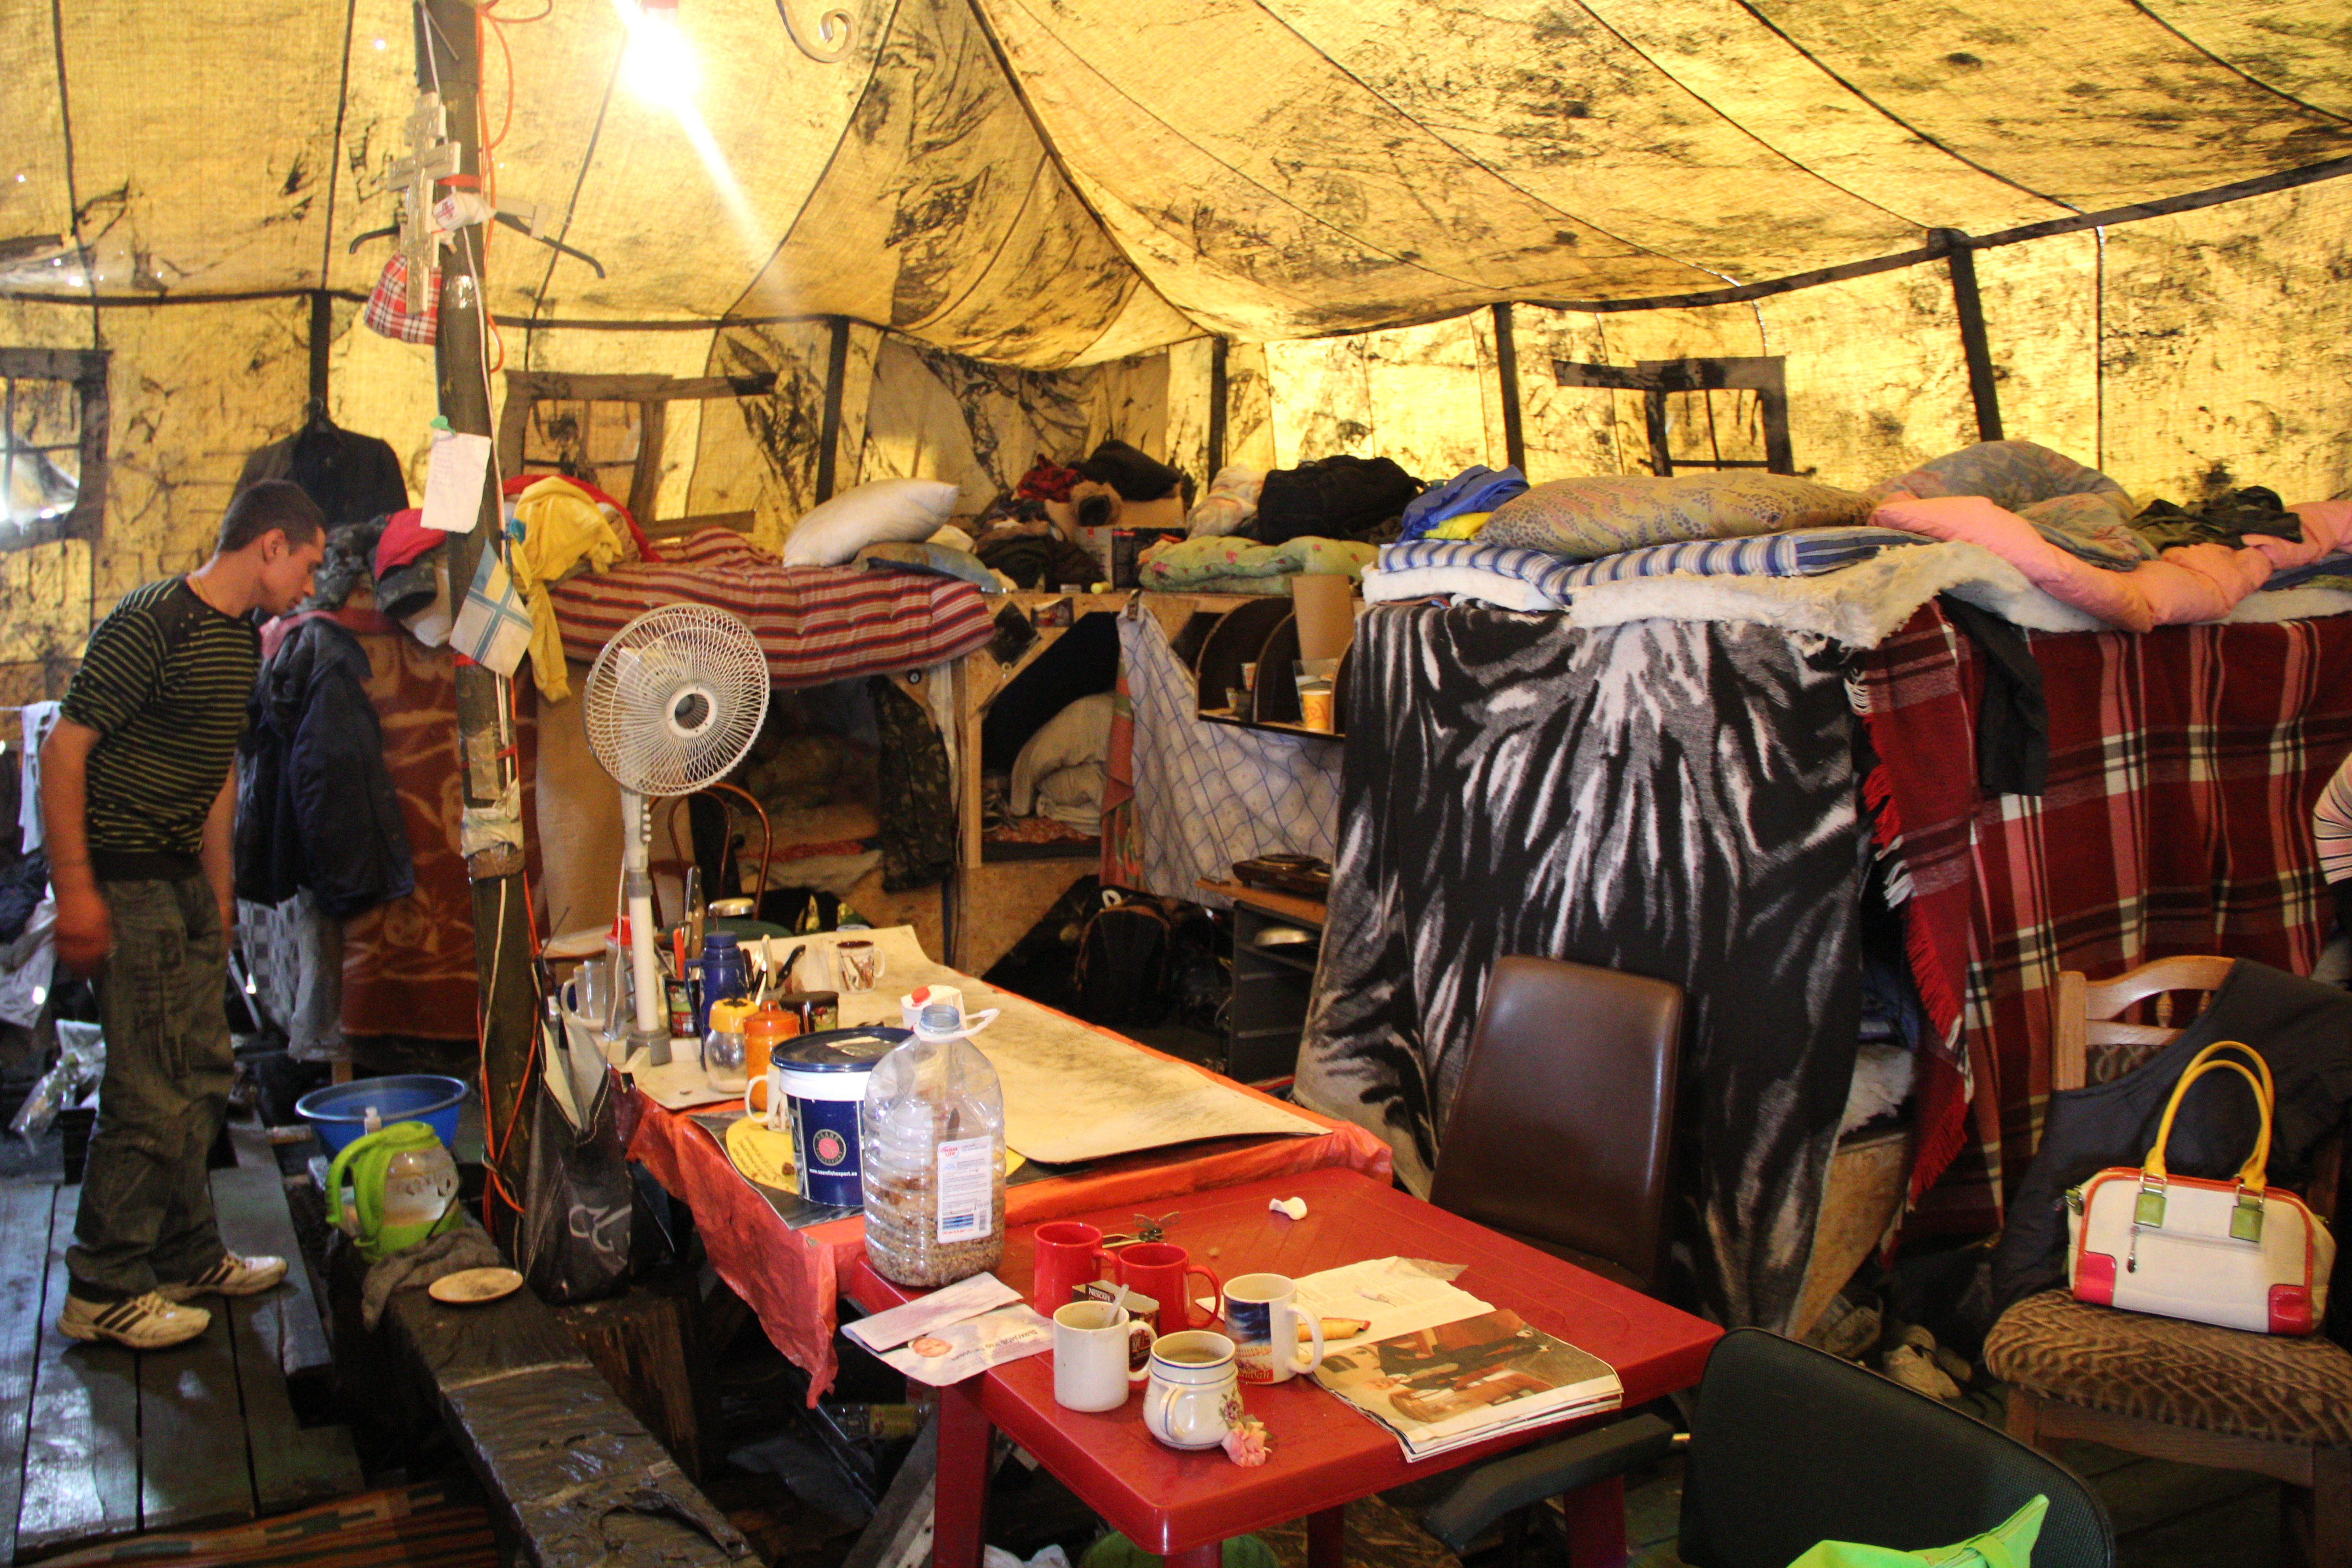 À l'intérieur d'une tente. 28 personnes dorment ici dans des conditions précaires. Crédit Pierre Sautreuil